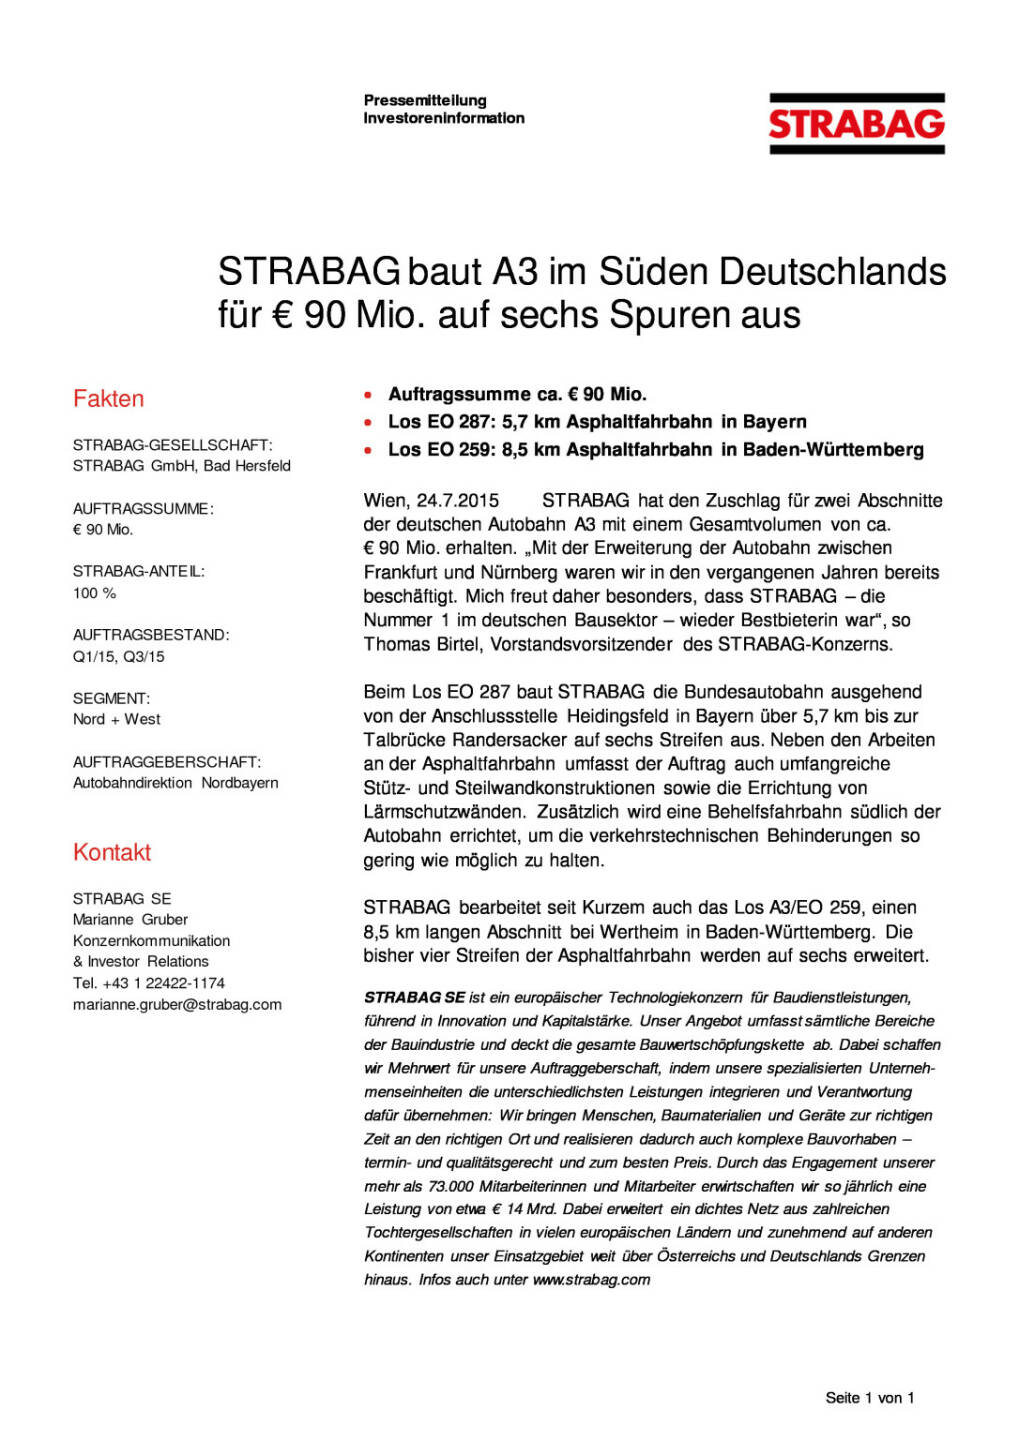 Strabag mit A3.Deutschland-Deal für € 90 Mio. , Seite 1/1, komplettes Dokument unter http://boerse-social.com/static/uploads/file_249_strabag_mit_a3deutschland-deal_fur_90_mio.pdf